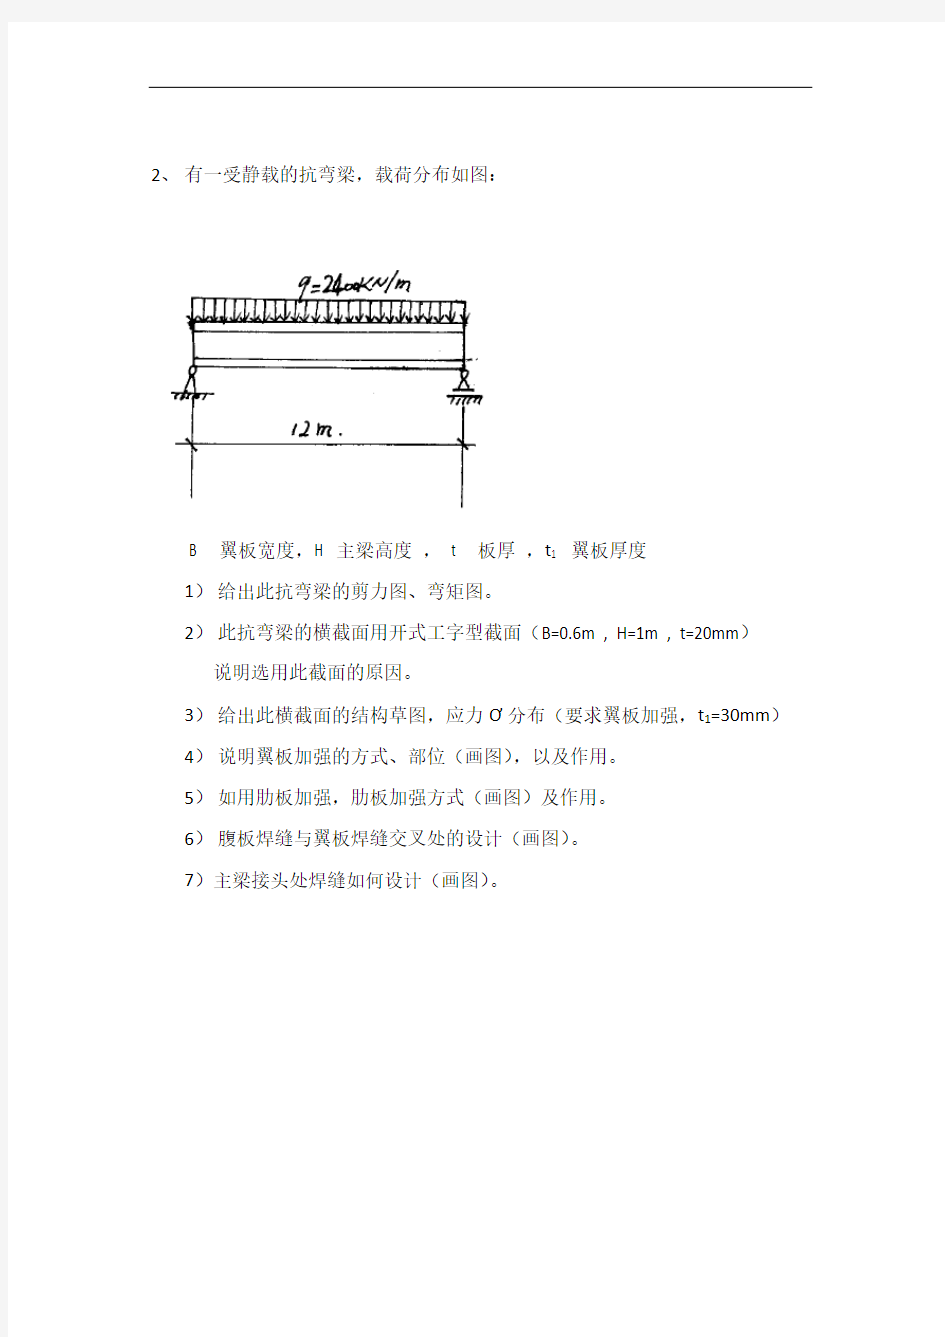 国际焊接工程师(IWE)结构口试试题